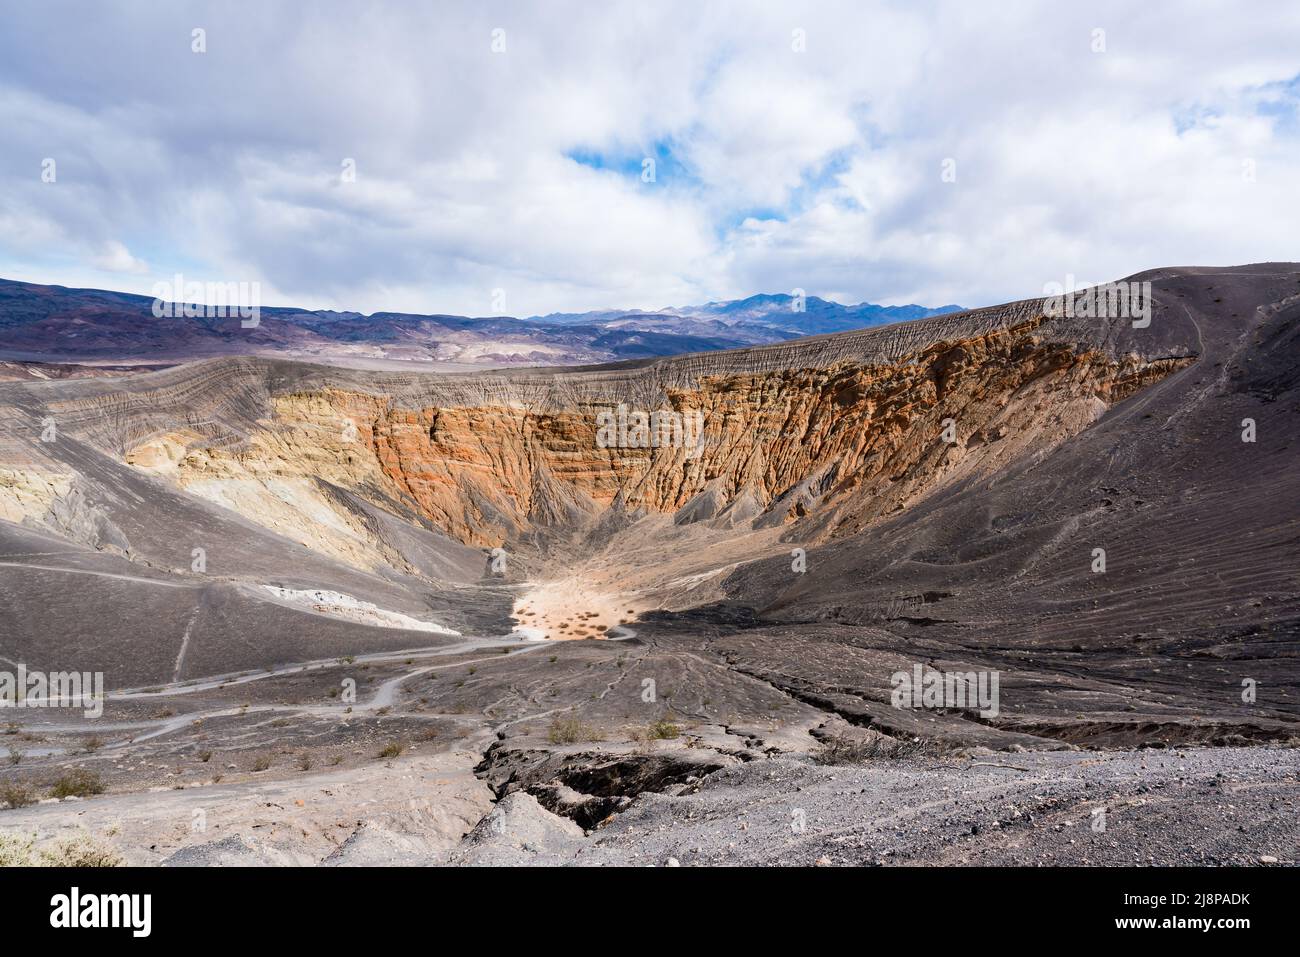 Le cratère d'Ubehebe, dans le parc national de la Vallée de la mort, est le reste d'un volcan qui a éclaté il y a des centaines d'années Banque D'Images